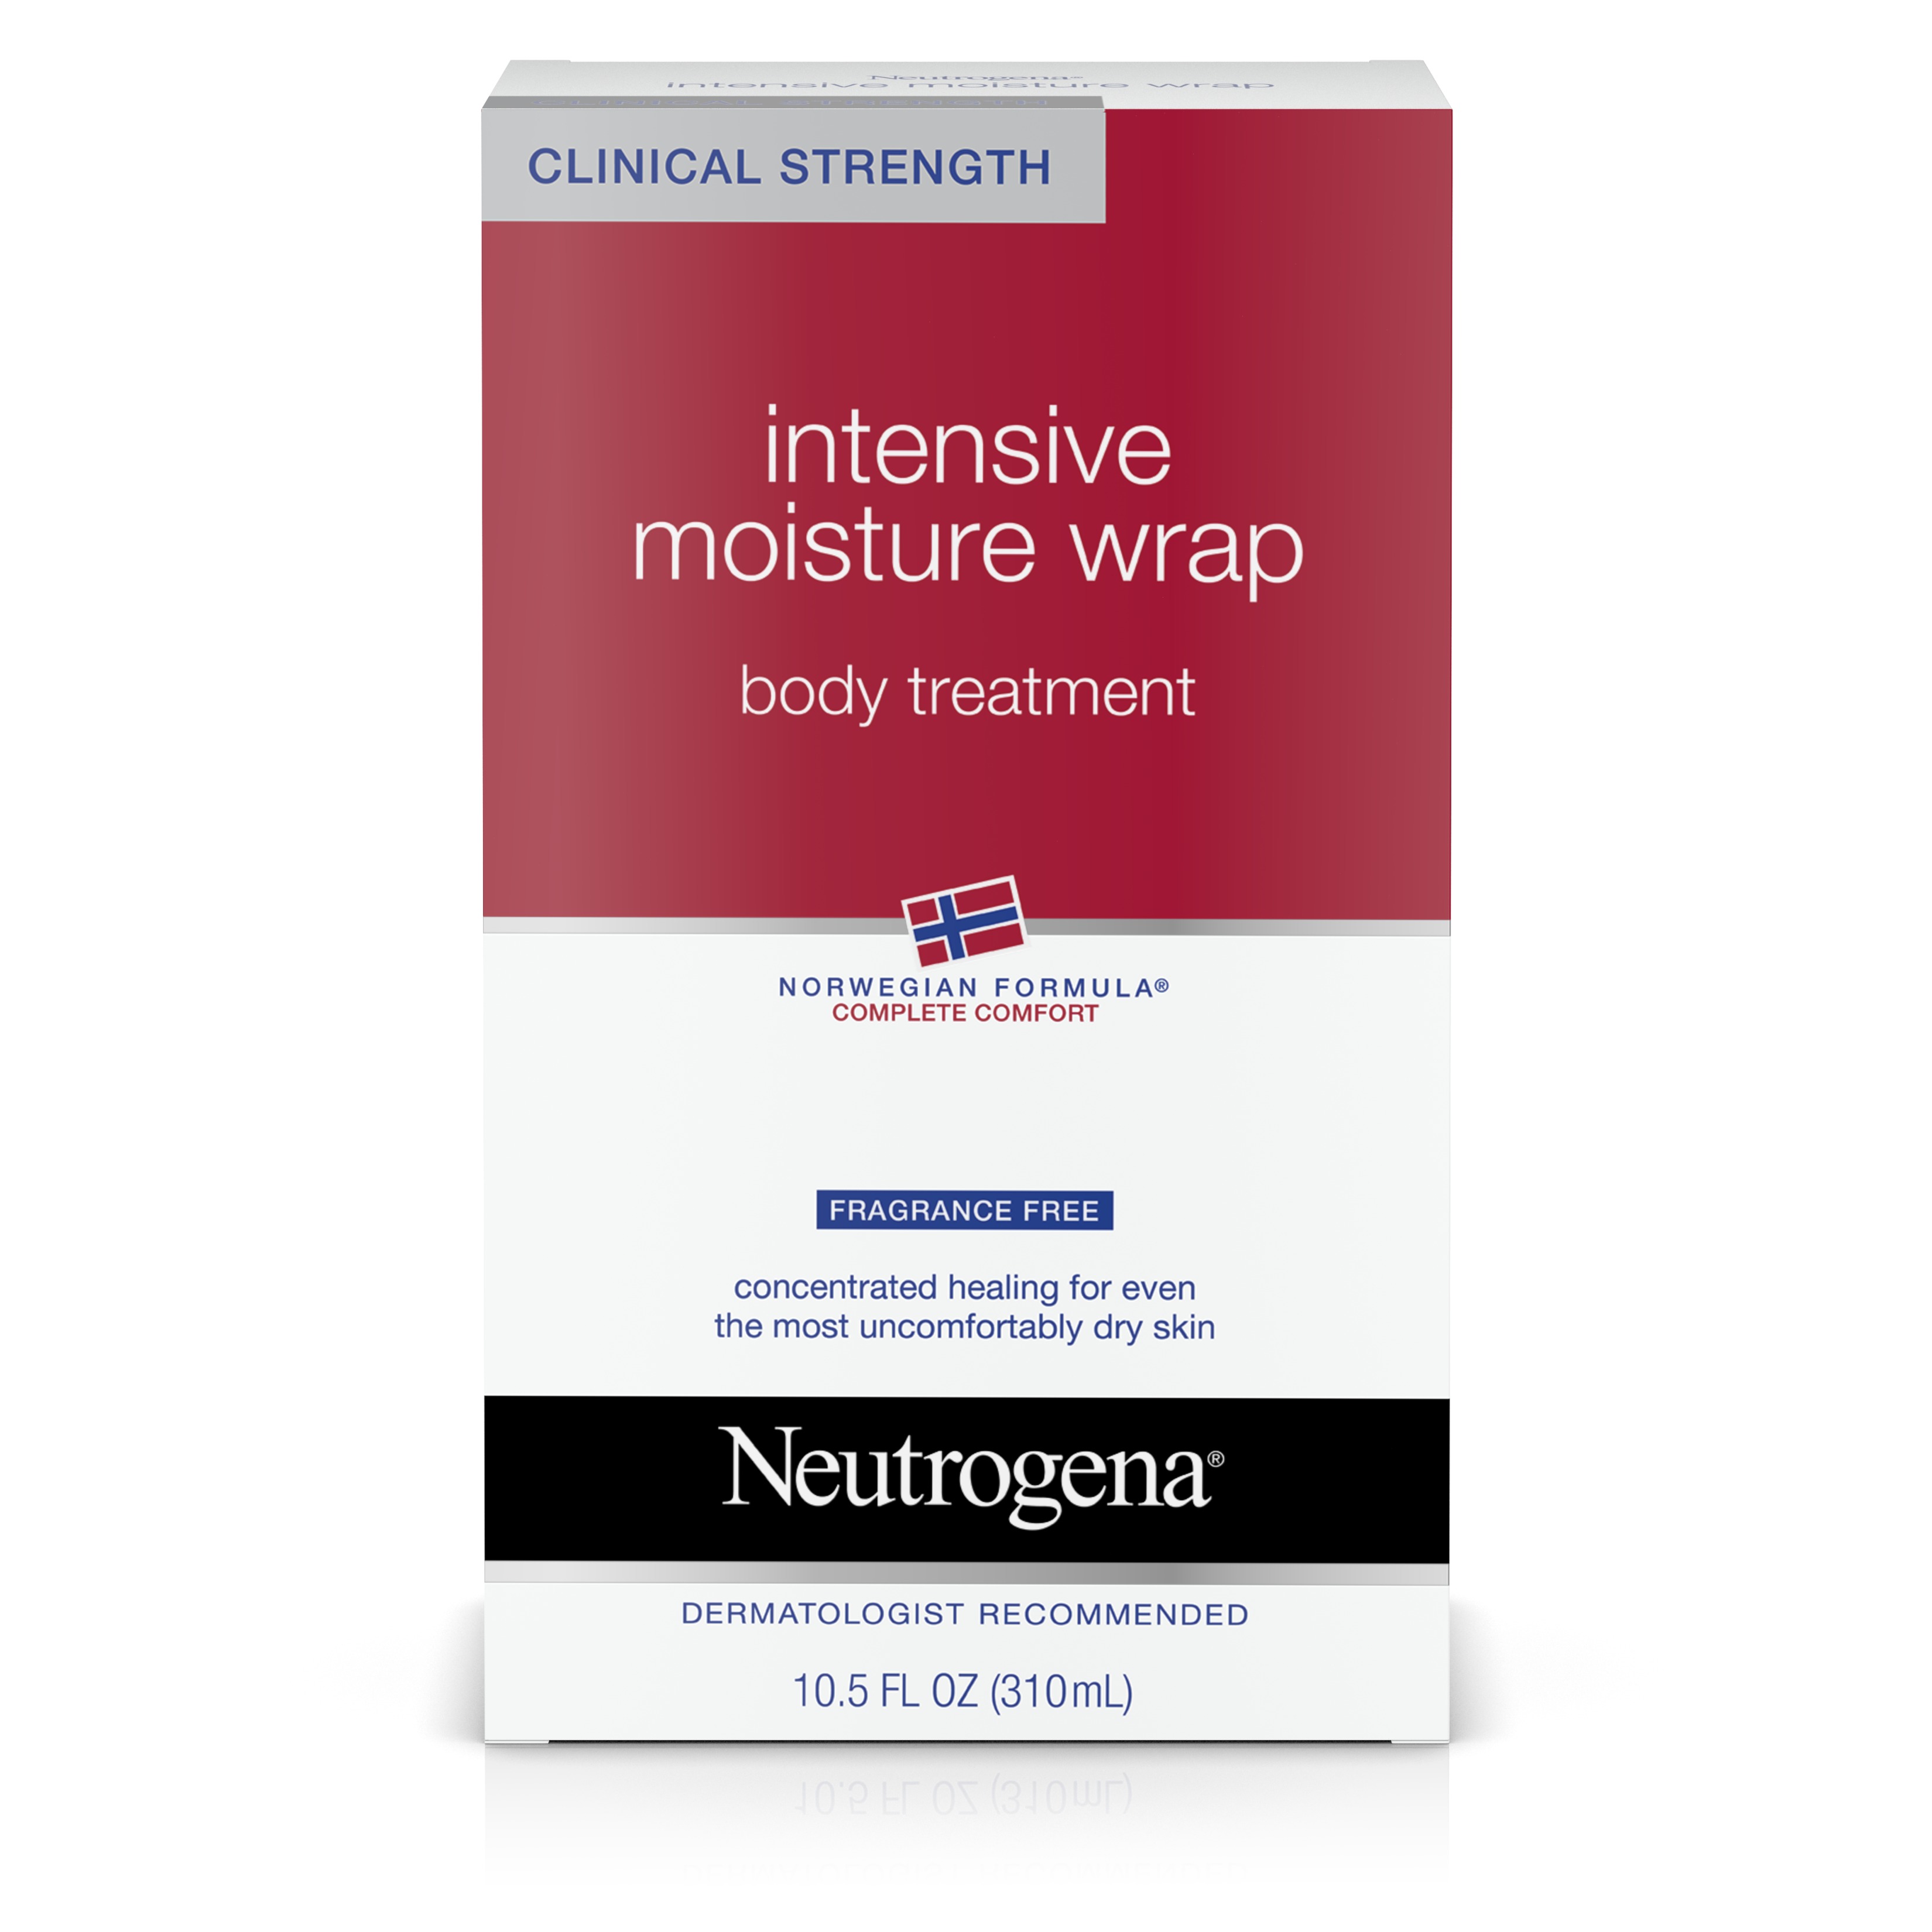 Neutrogena Norwegian Formula Intensive Moisture Wrap Body Treatment Ff, 10.5 Oz - image 1 of 6